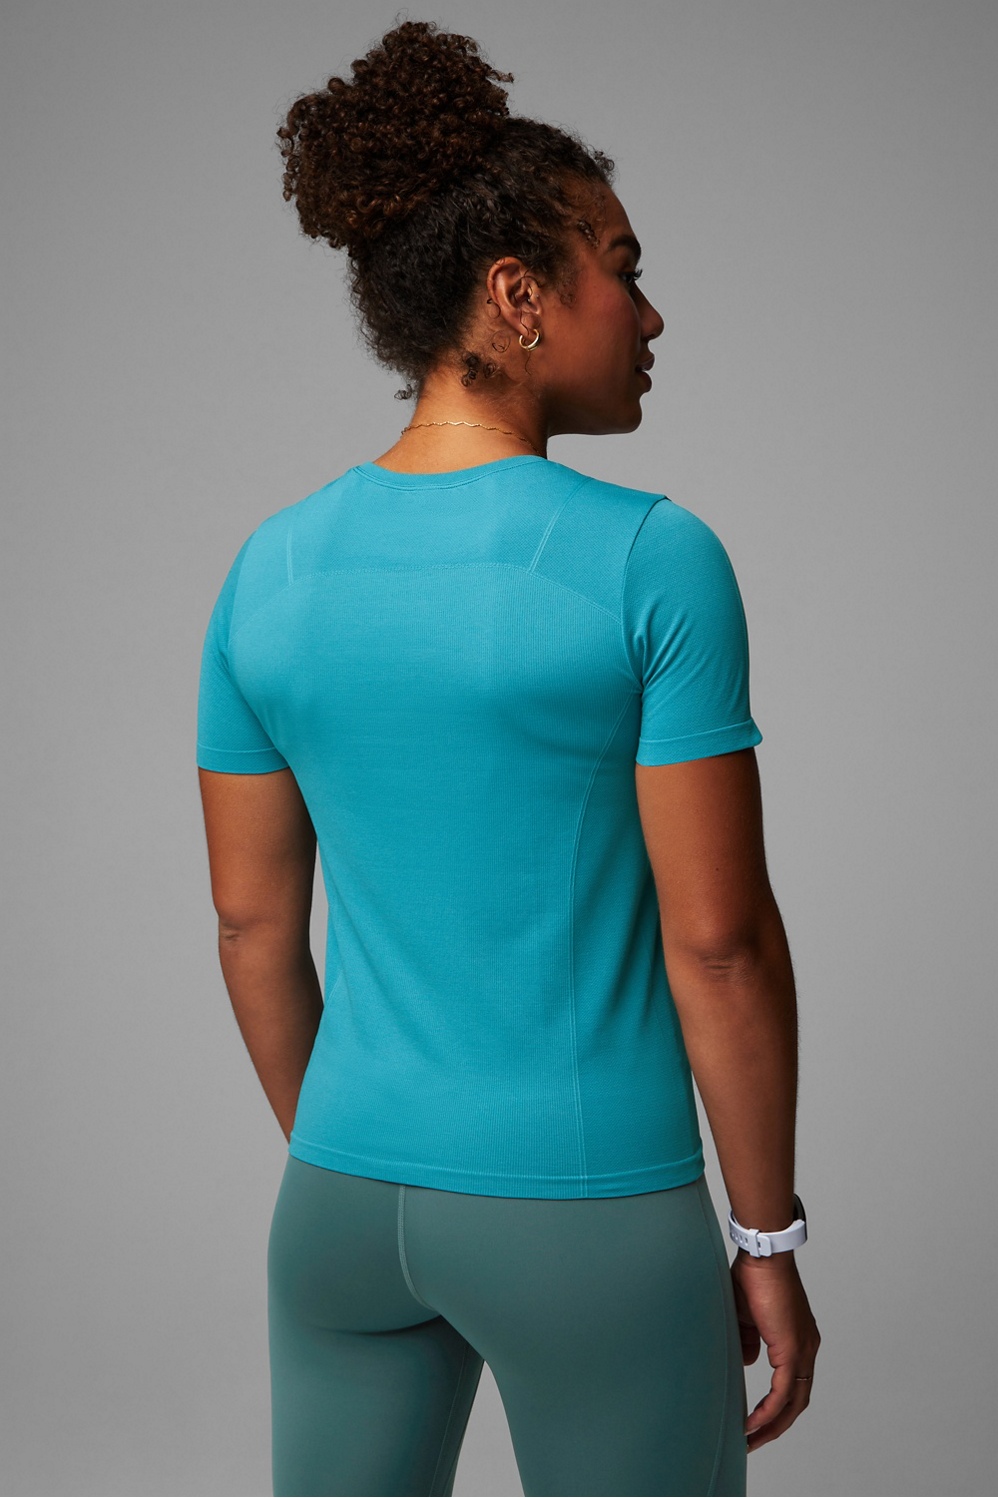 Lululemon Swiftly Tech Short Sleeve Shirt Blue Size 6 - $45 (33